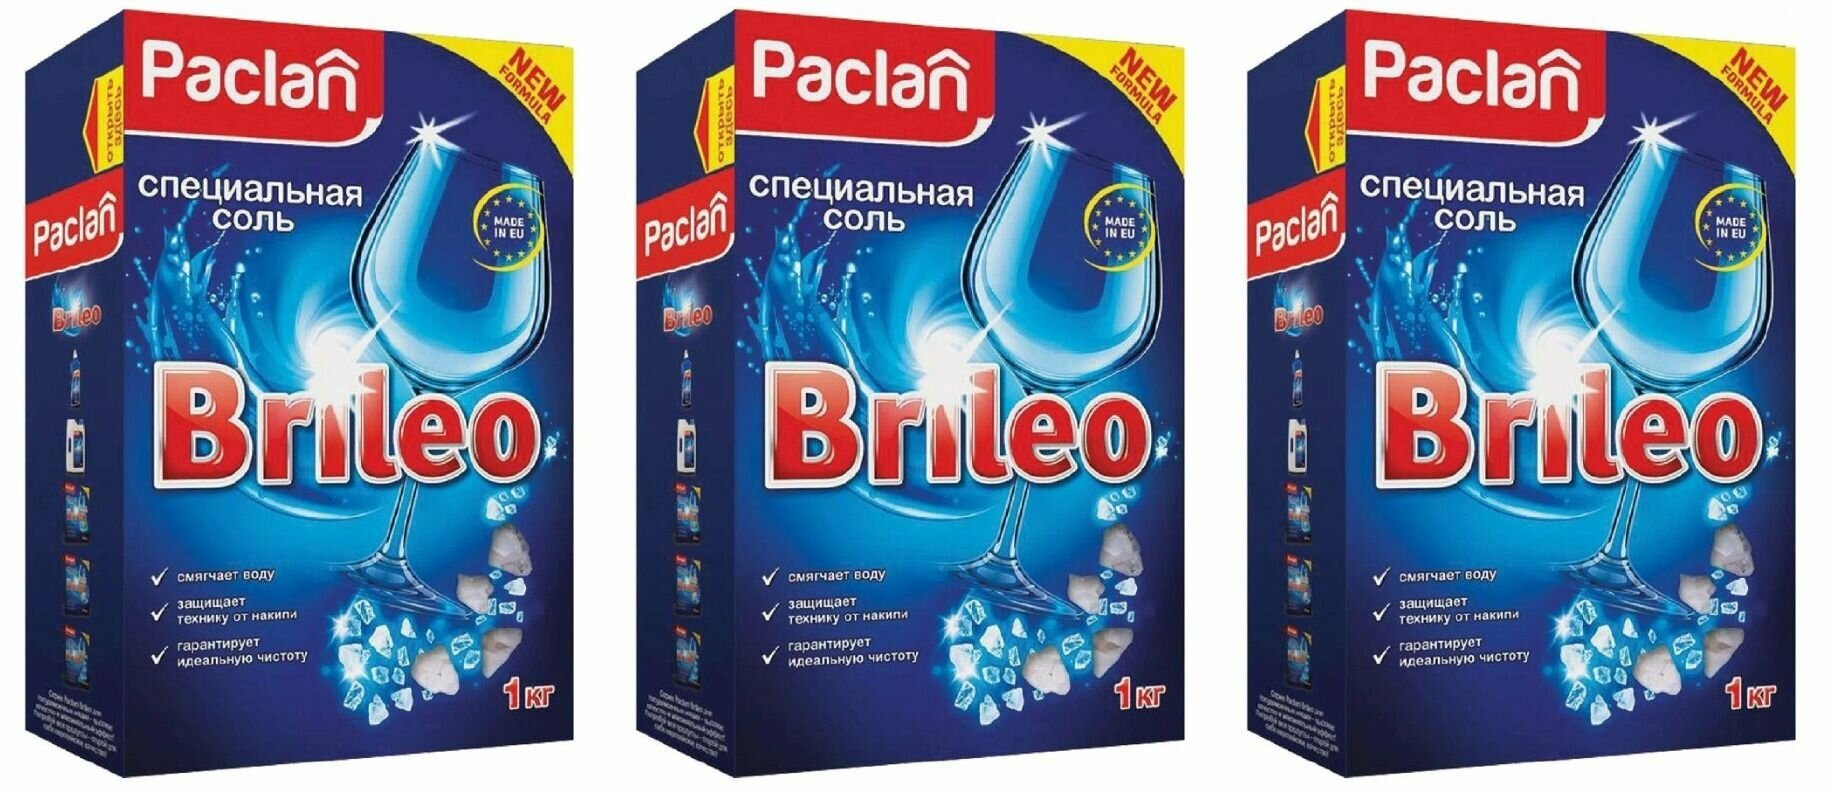 Paclan Соль для посудомоечных машин Brileo, 1 кг, 3 уп/